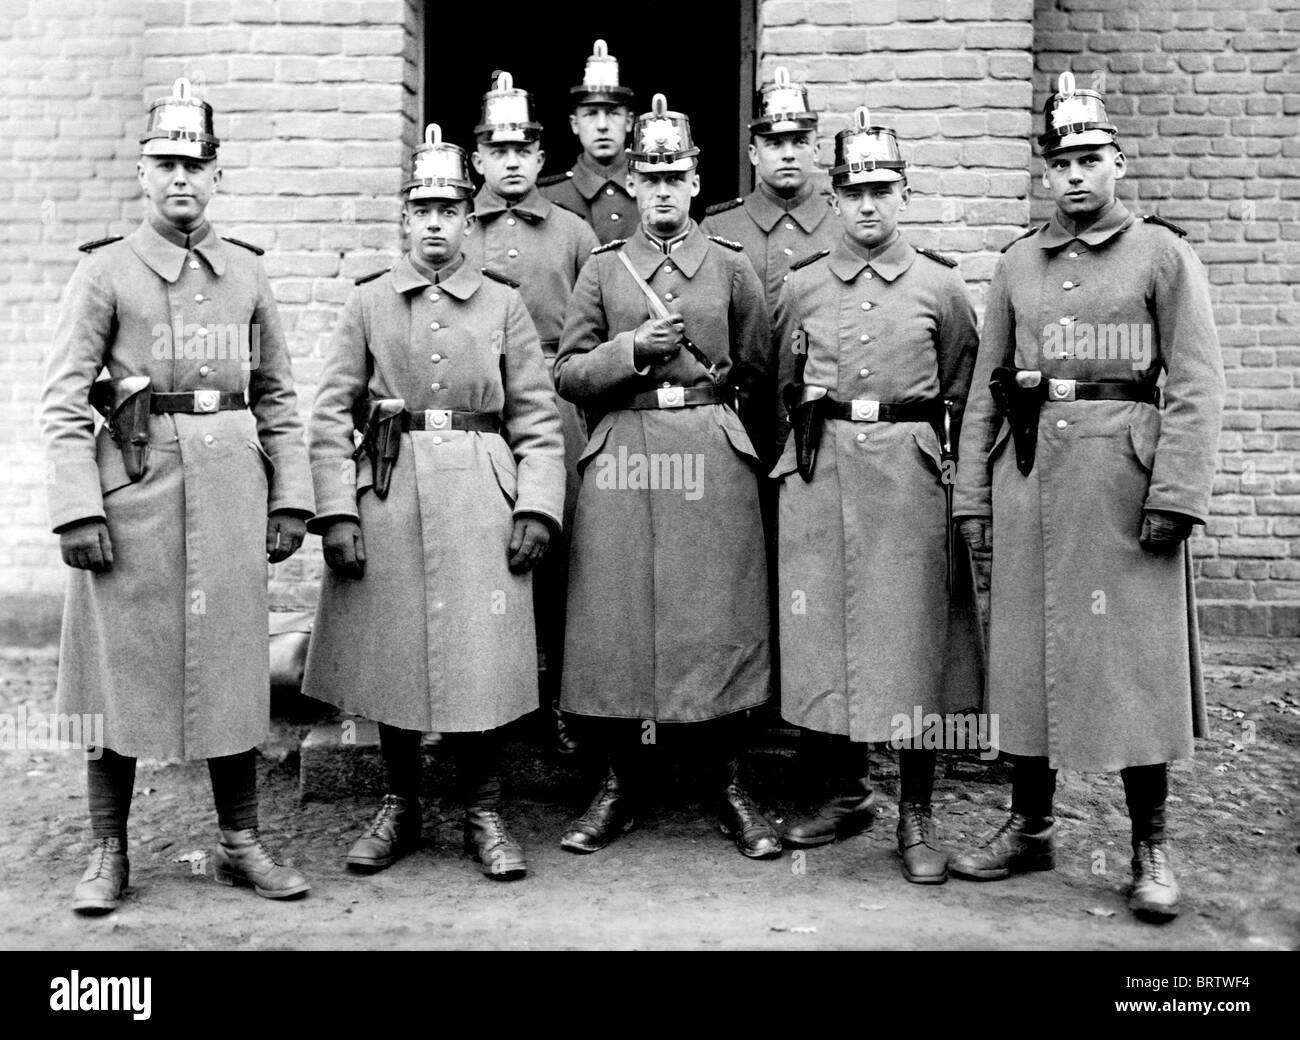 Brandeburgo Accademia di polizia, immagine storica, ca. 1930 Foto Stock